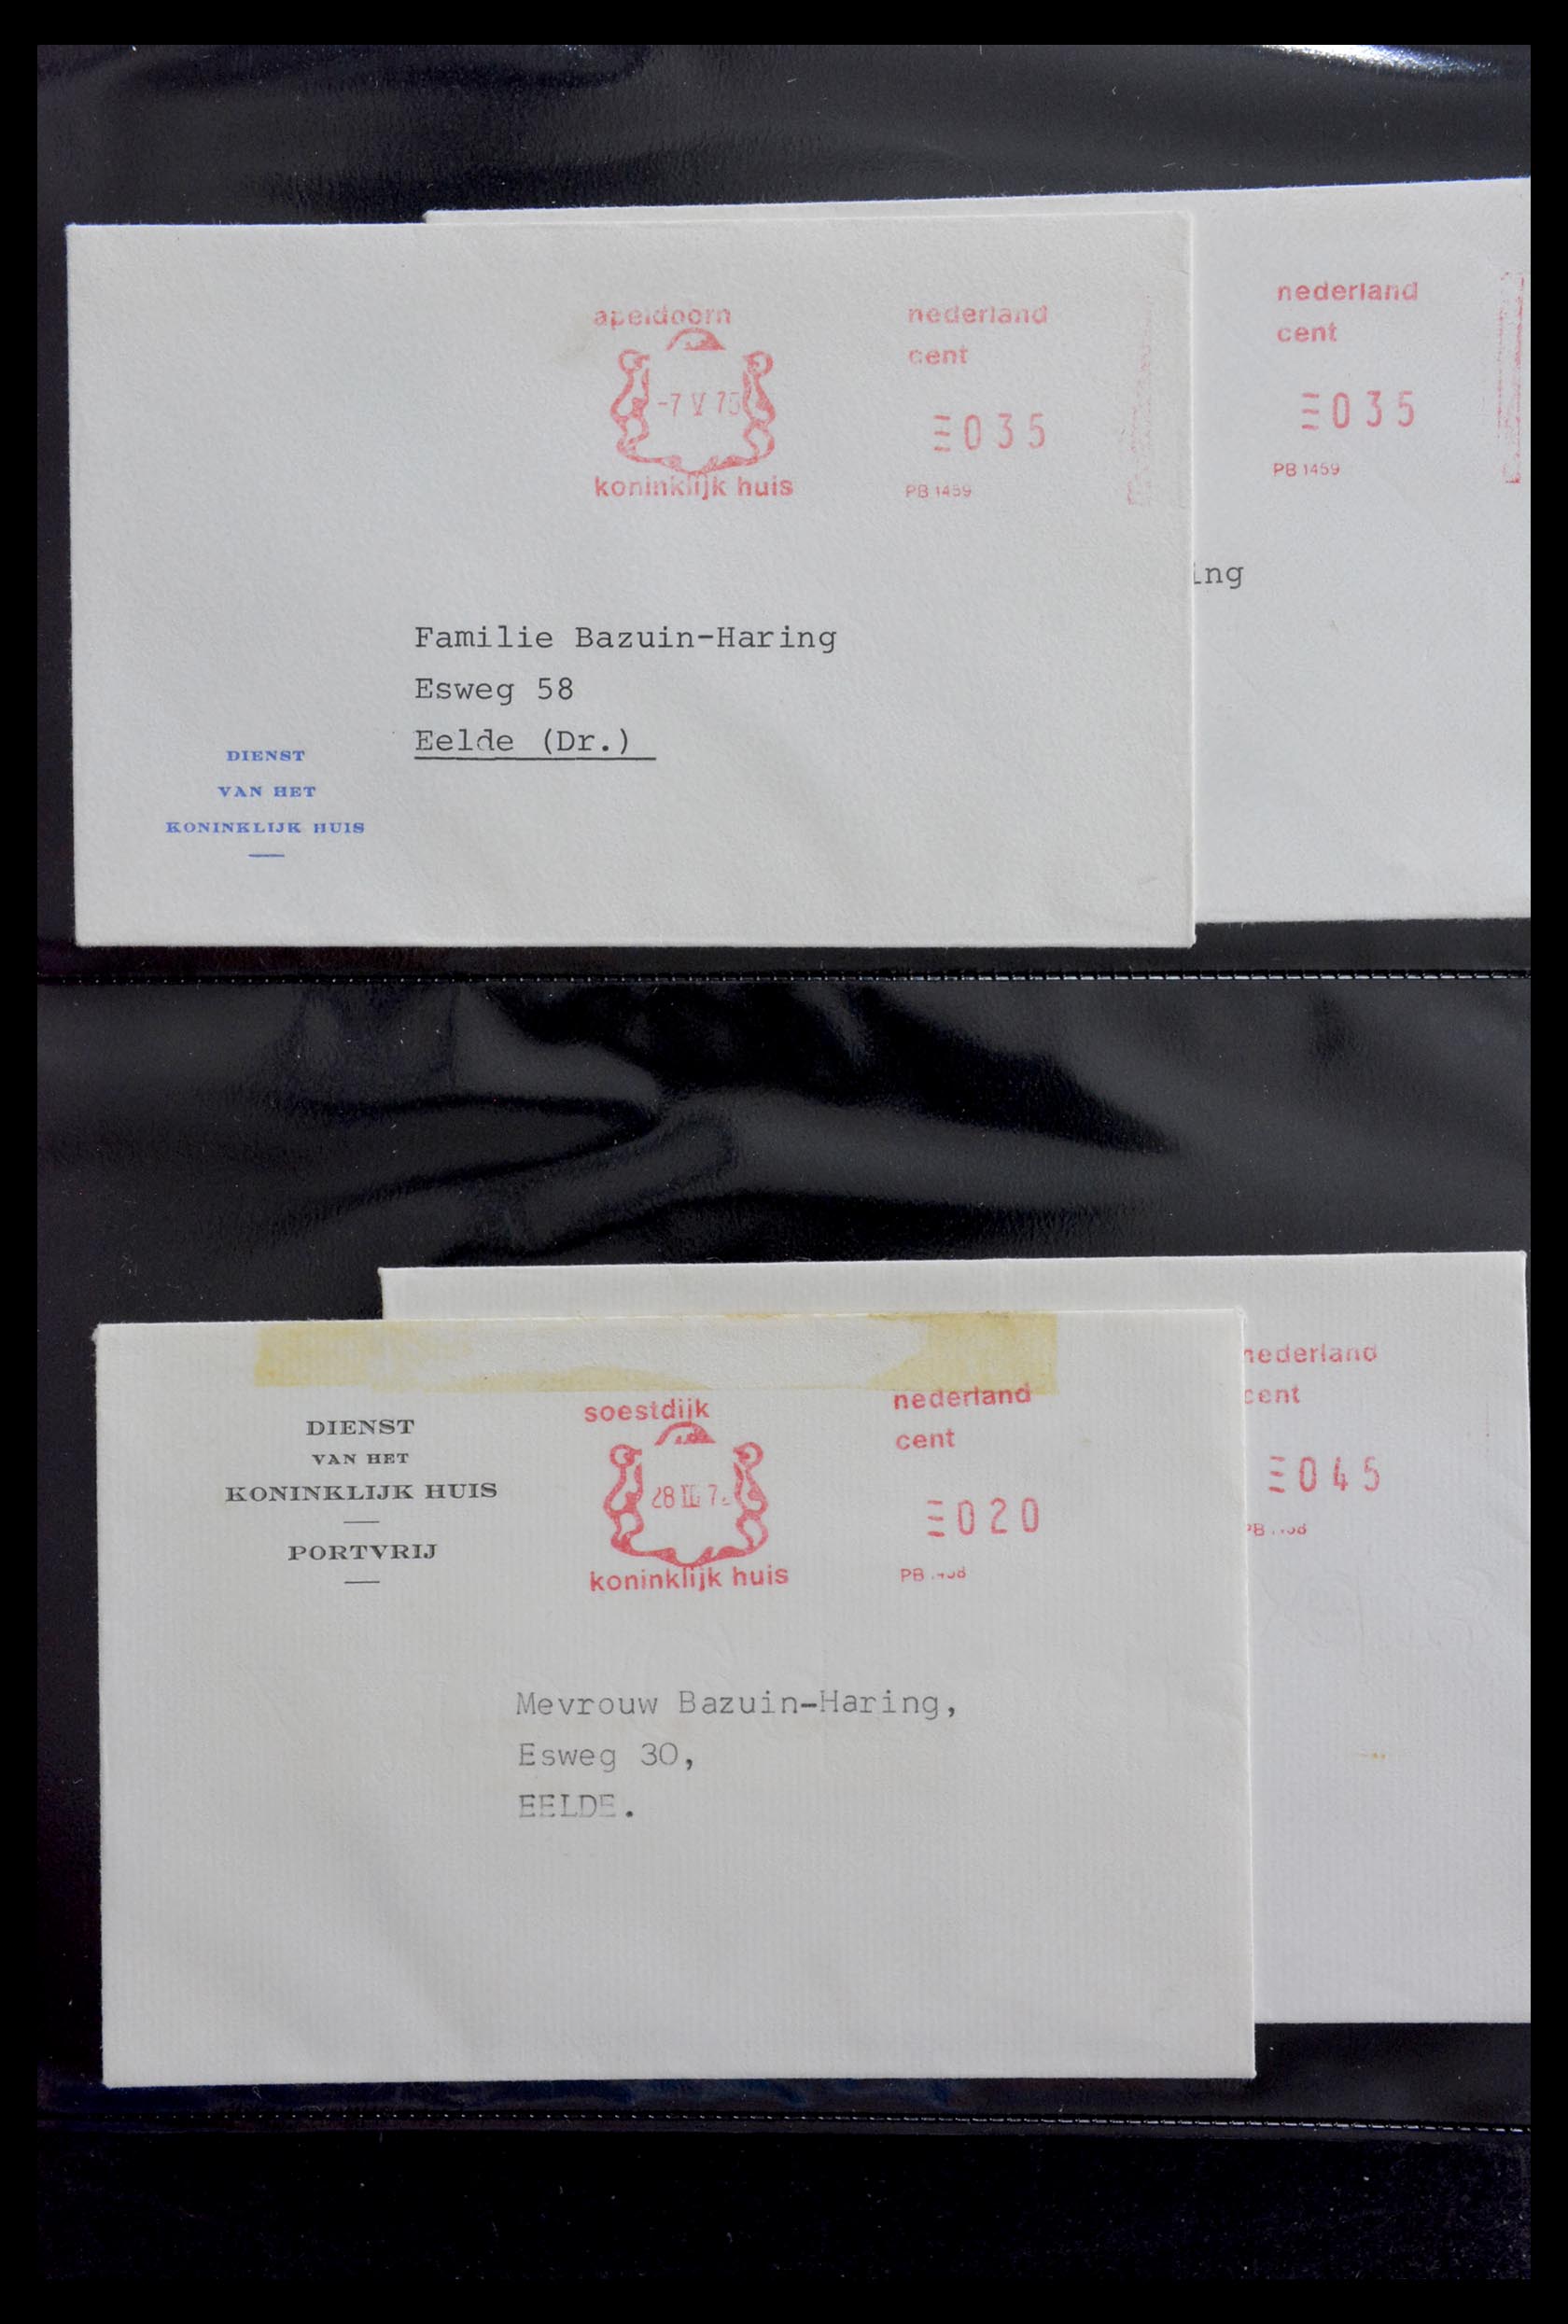 29241 007 - 29241 Nederland brieven koninklijk huis.